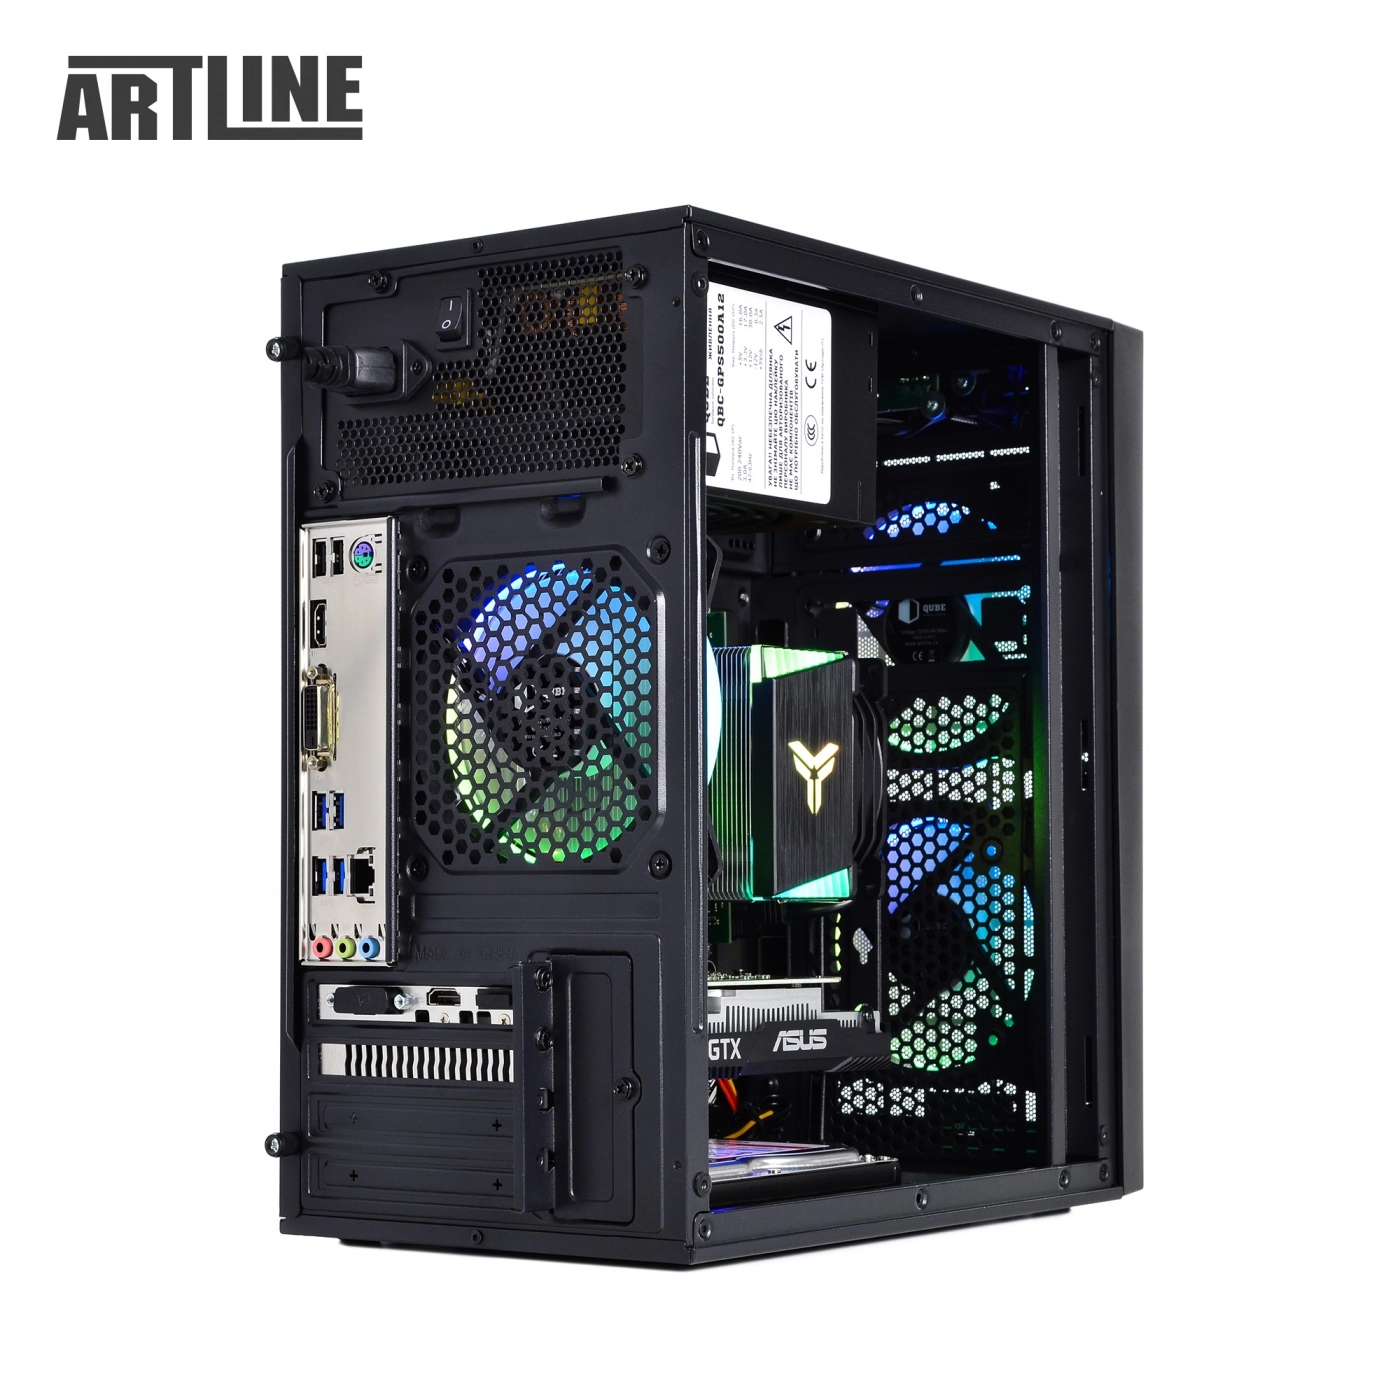 Купить Компьютер ARTLINE Gaming X43v23 - фото 12